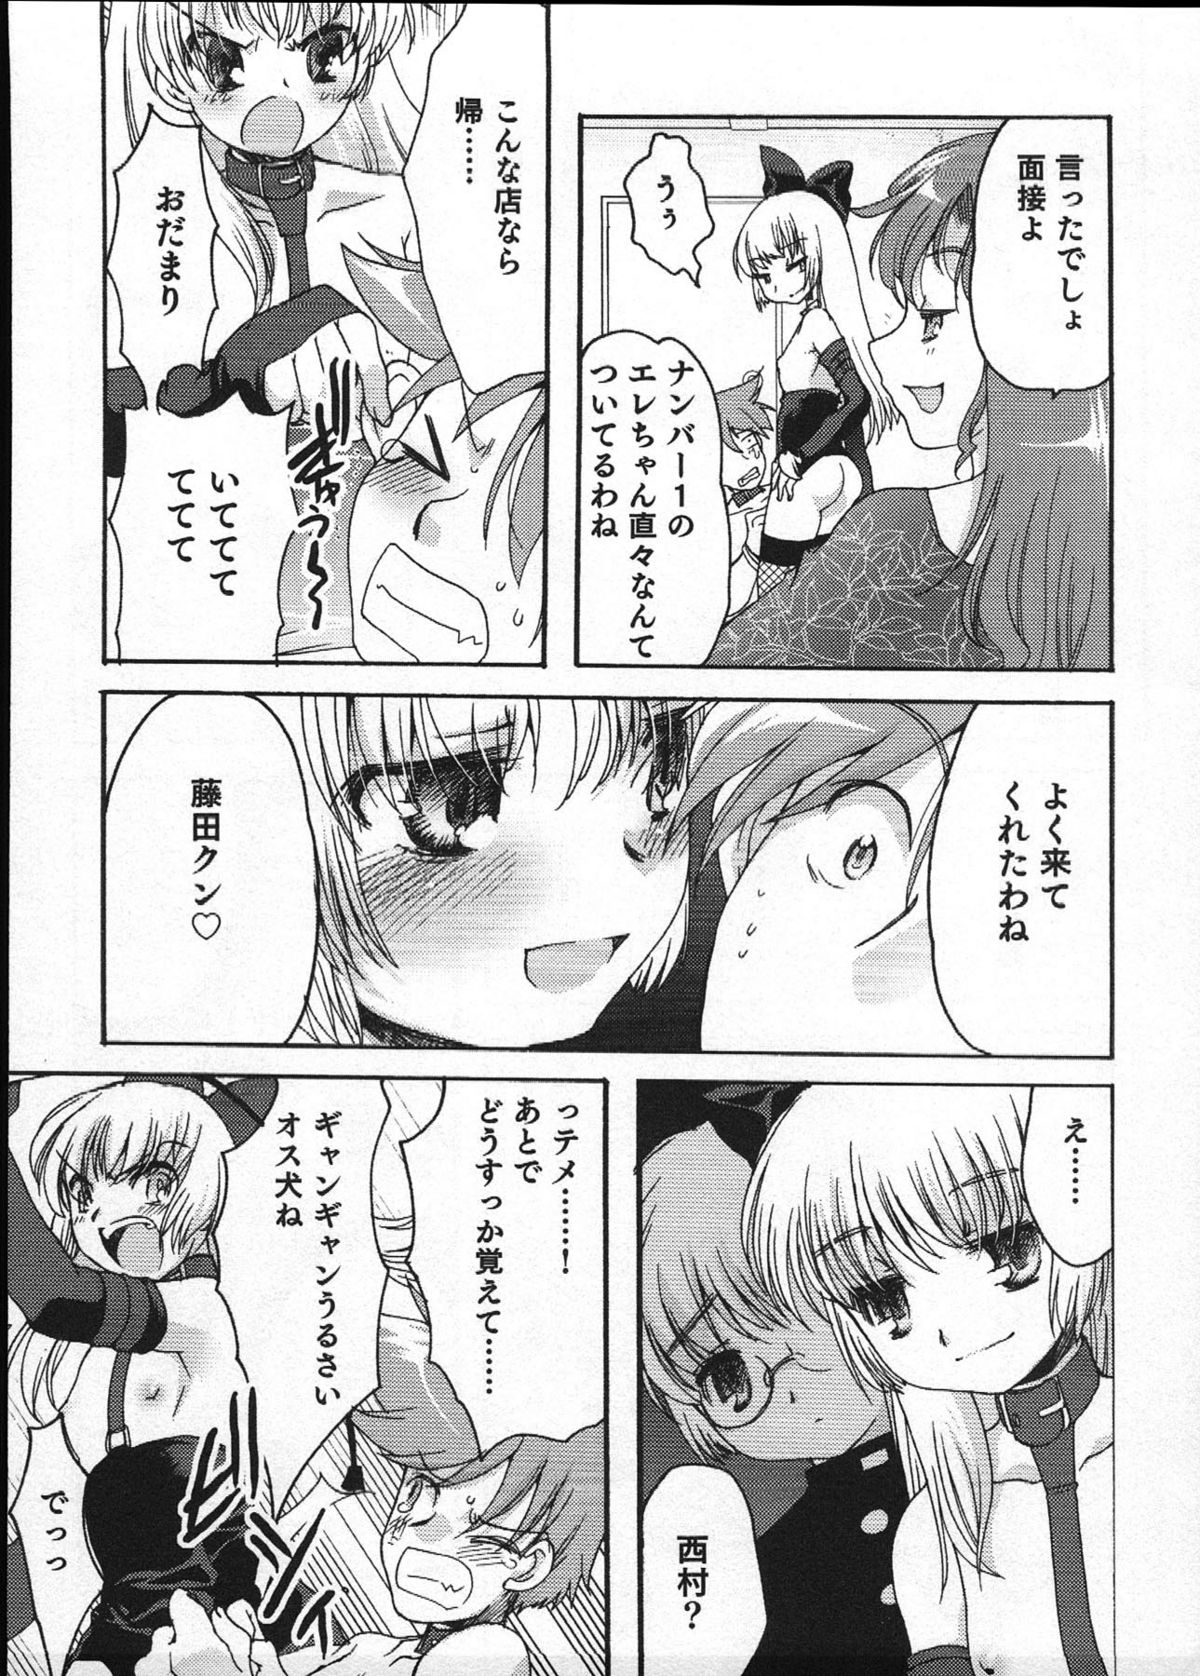 [Anthology] Ero Shota 12 - Sweet Maple Boys page 26 full